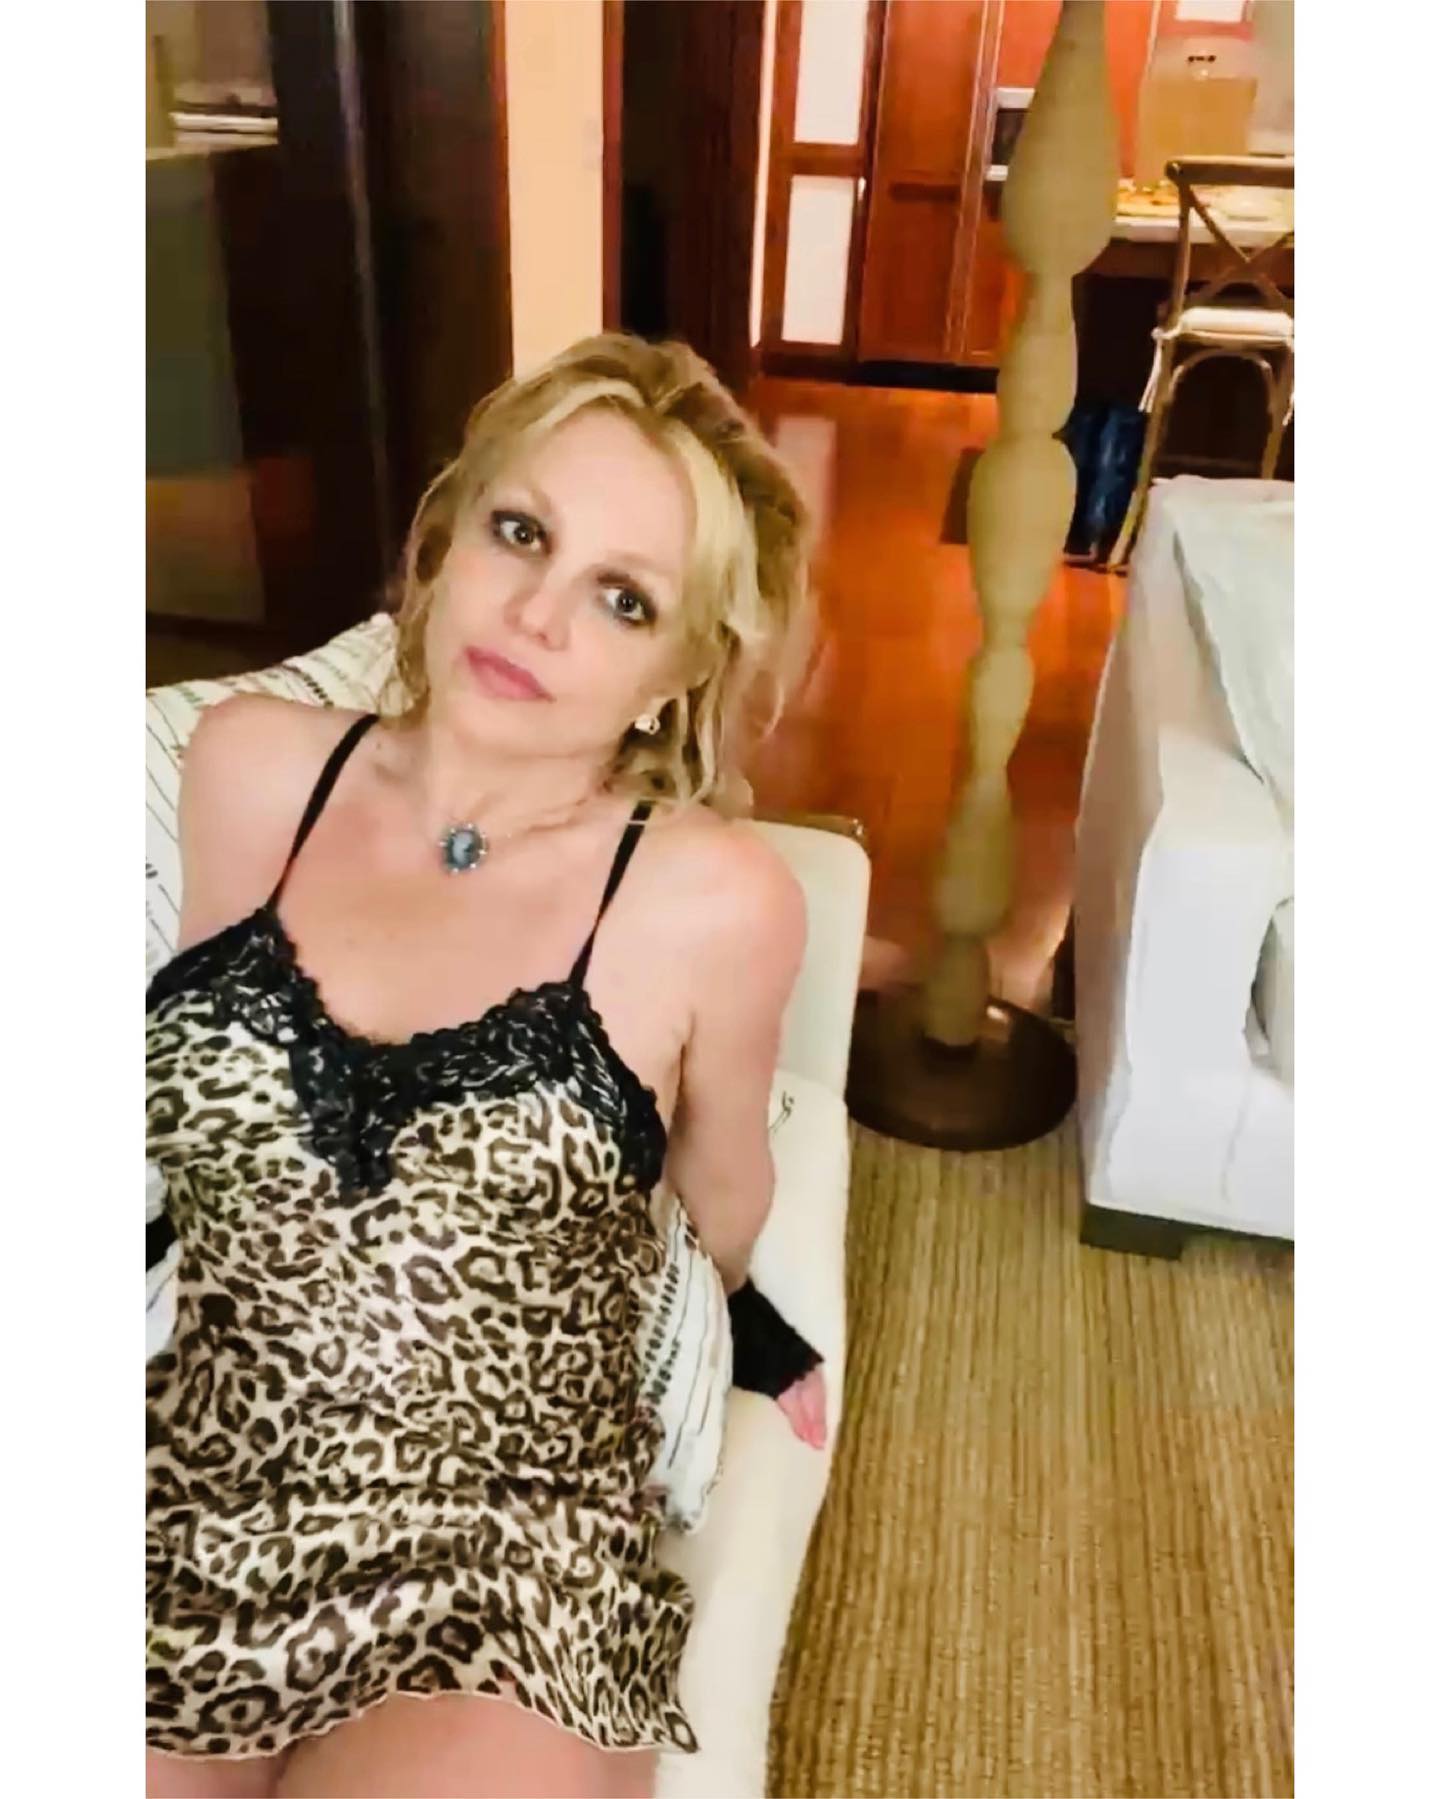 Fotos n°9 : Sesin de fotos en casa de Britney Spears!